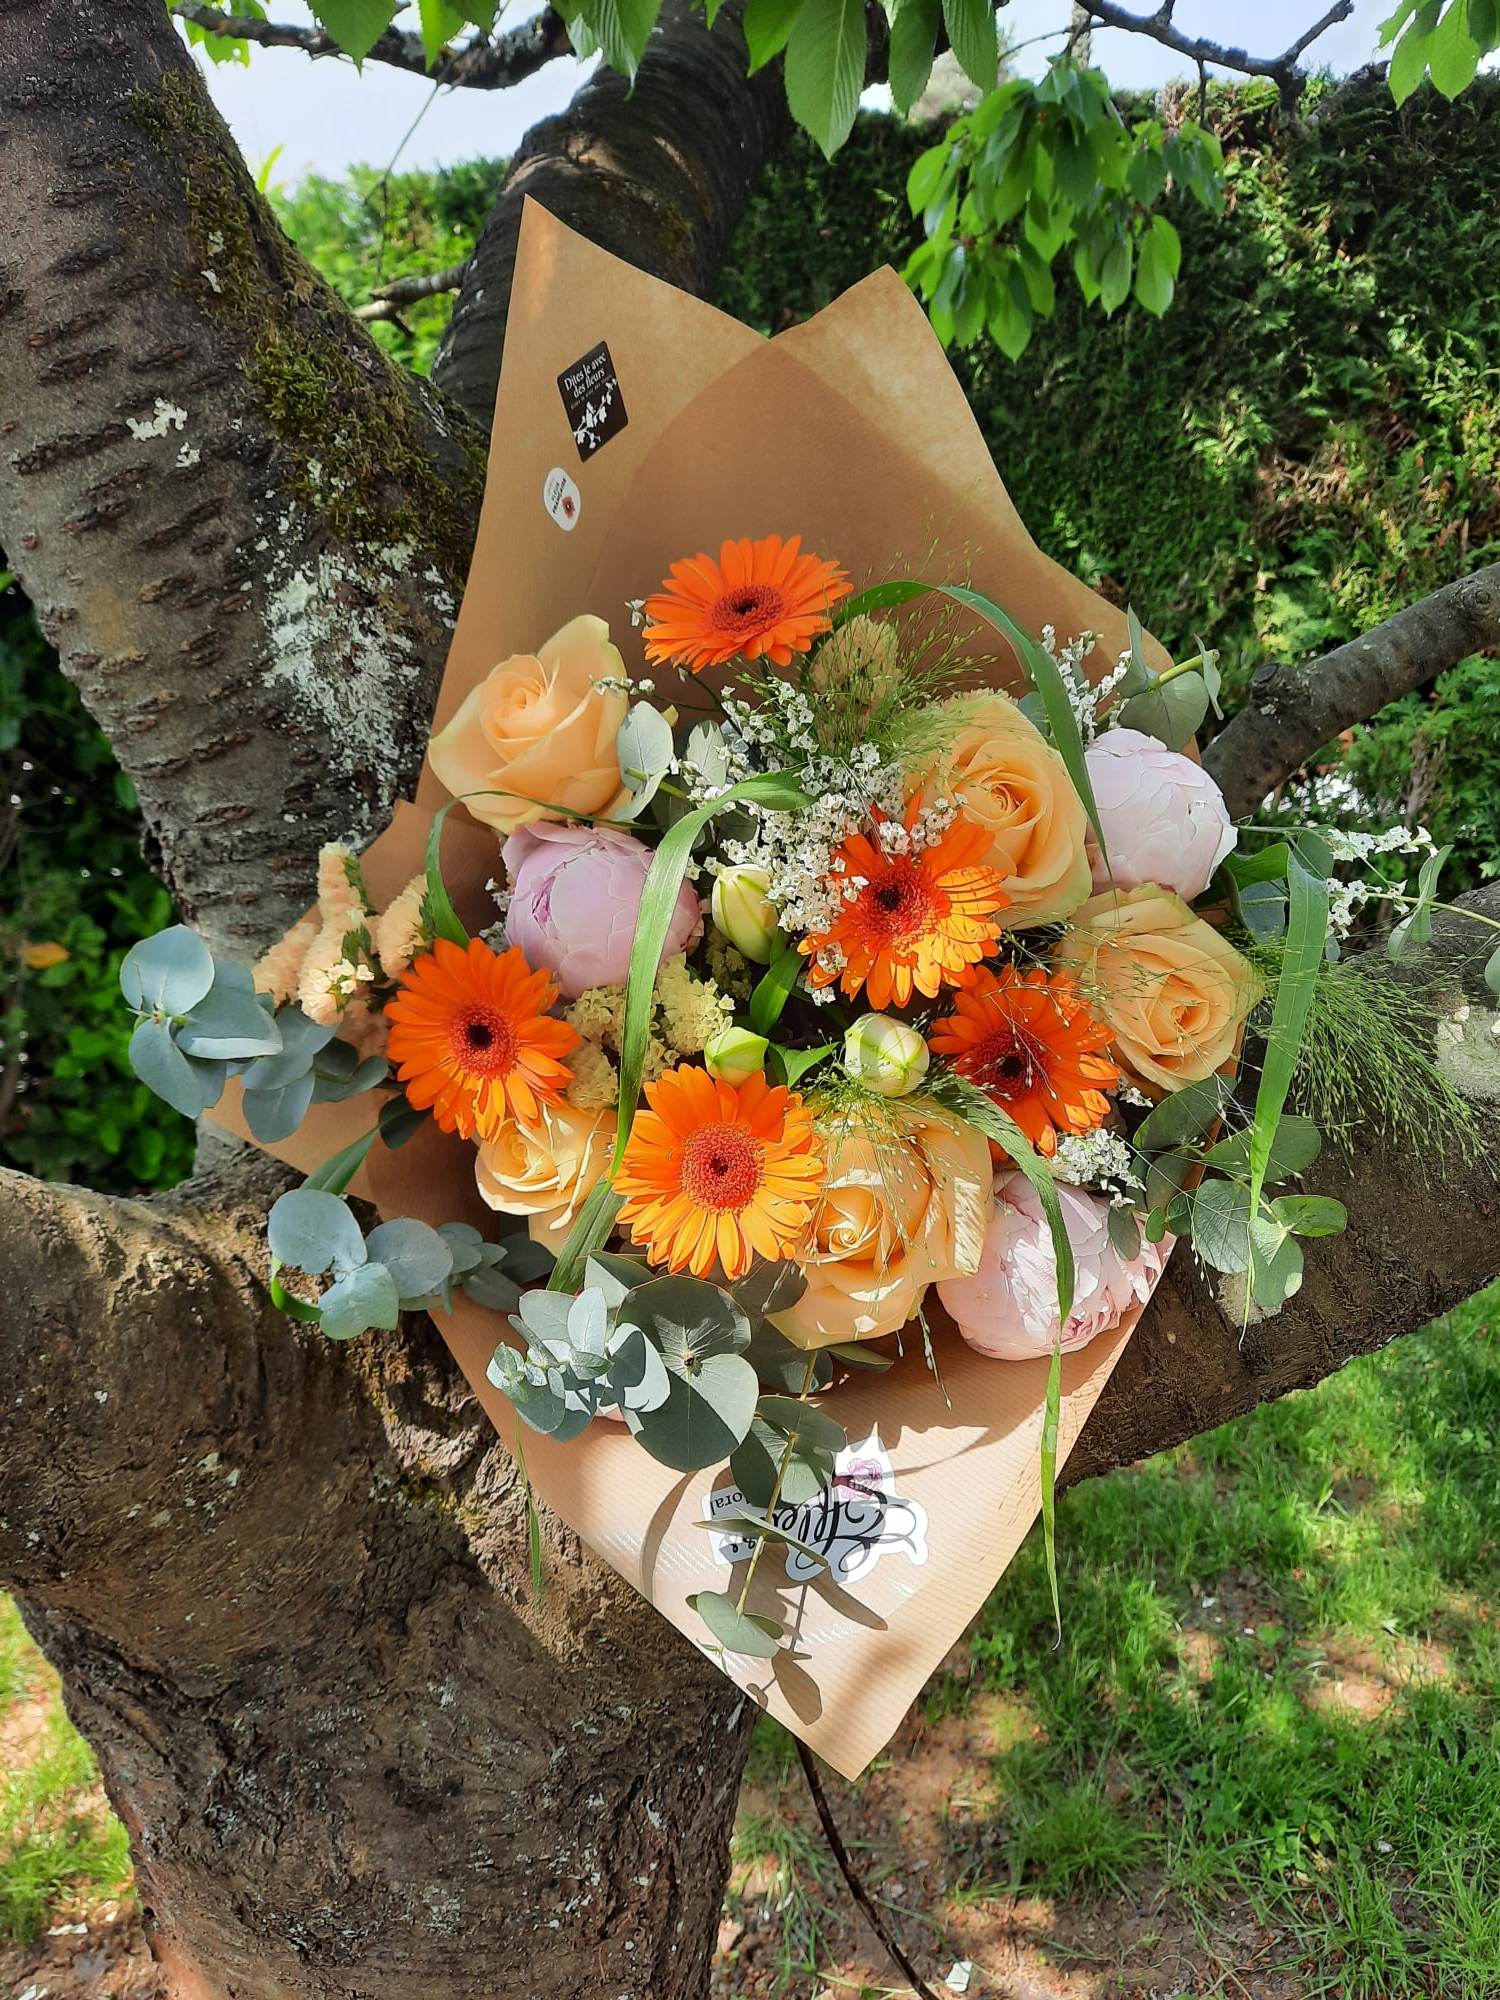 Choisir un bouquet de fleurs pour anniversaire : mes 5 recommandations